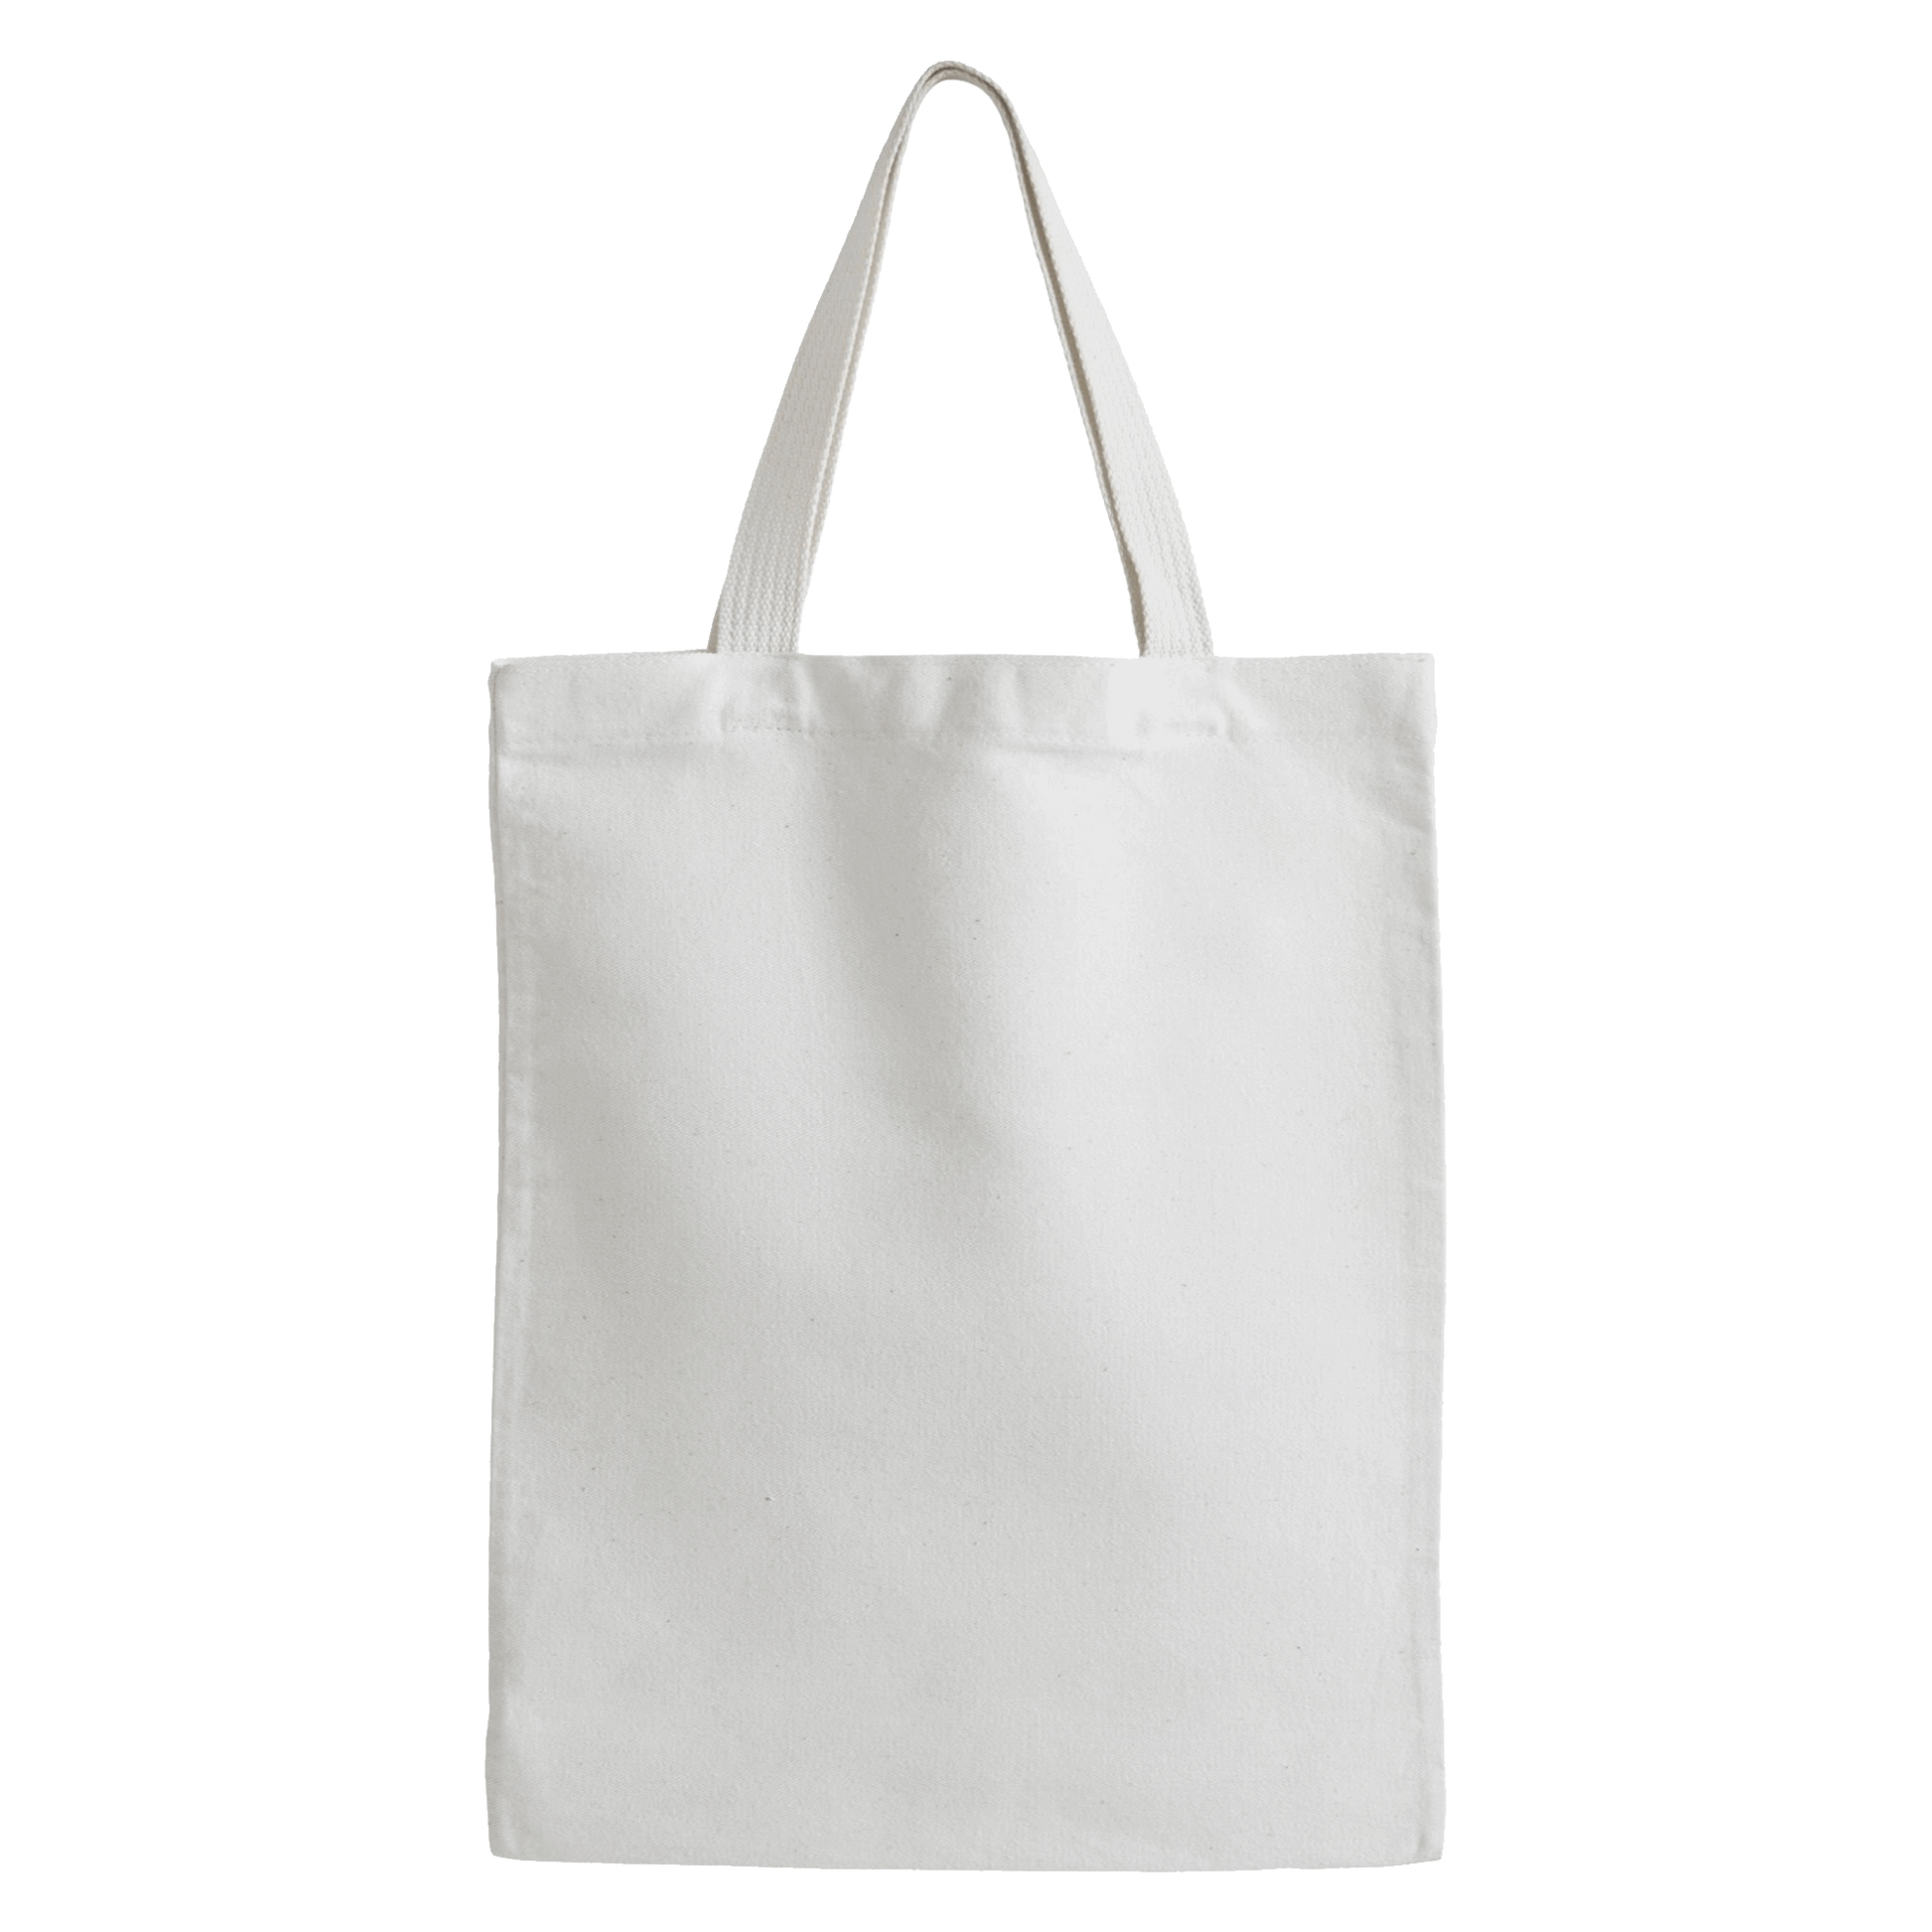 Tote Bag Brand On Demand